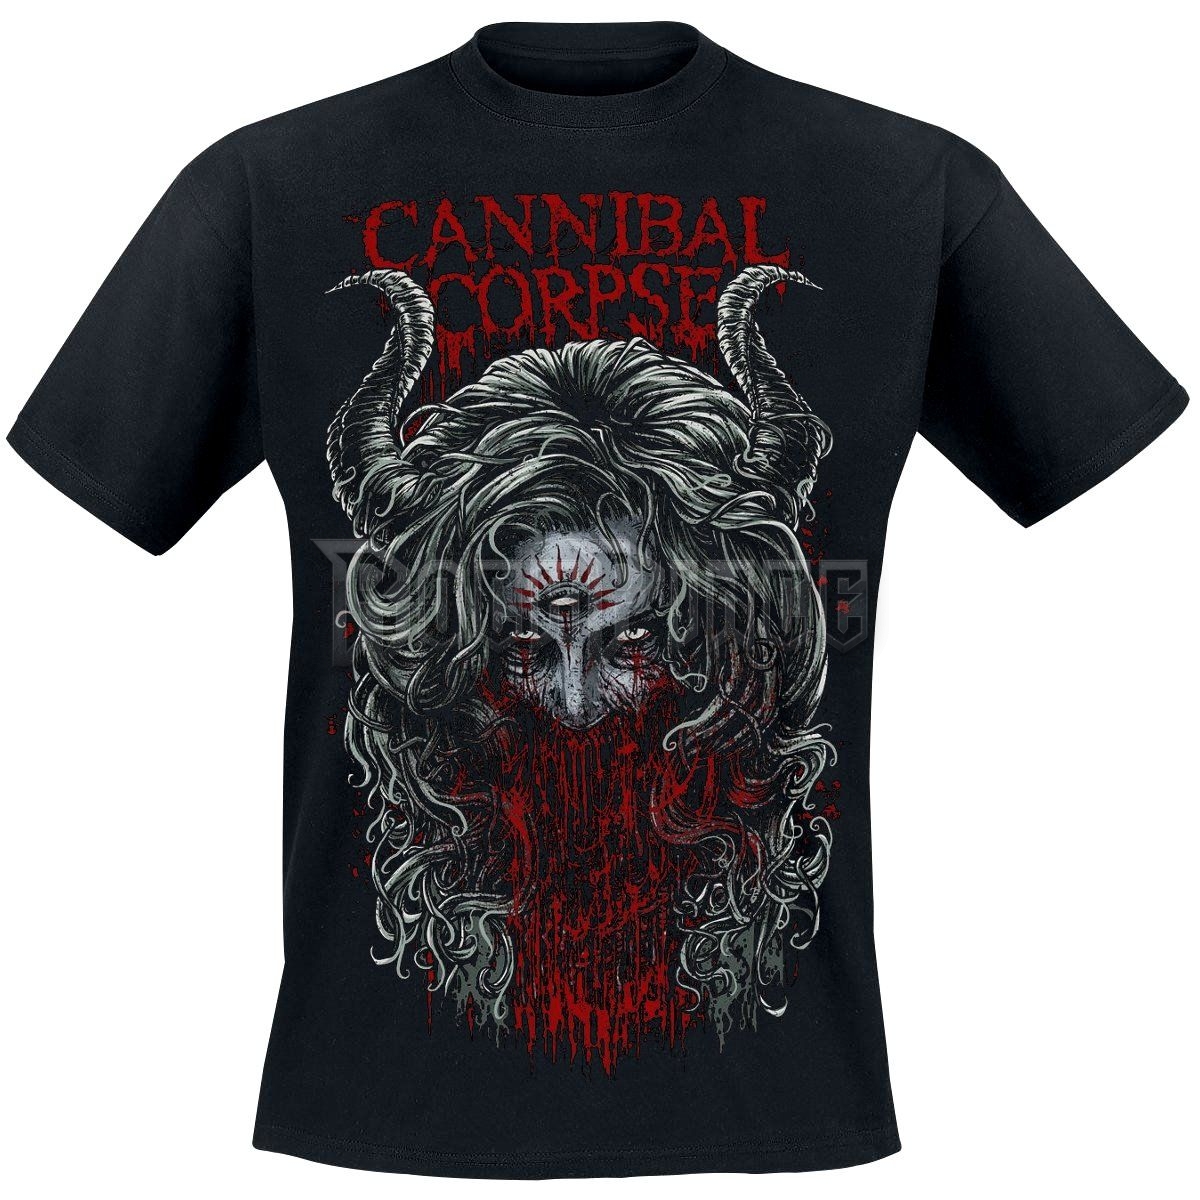 Cannibal Corpse - Demon's Night - UNISEX PÓLÓ